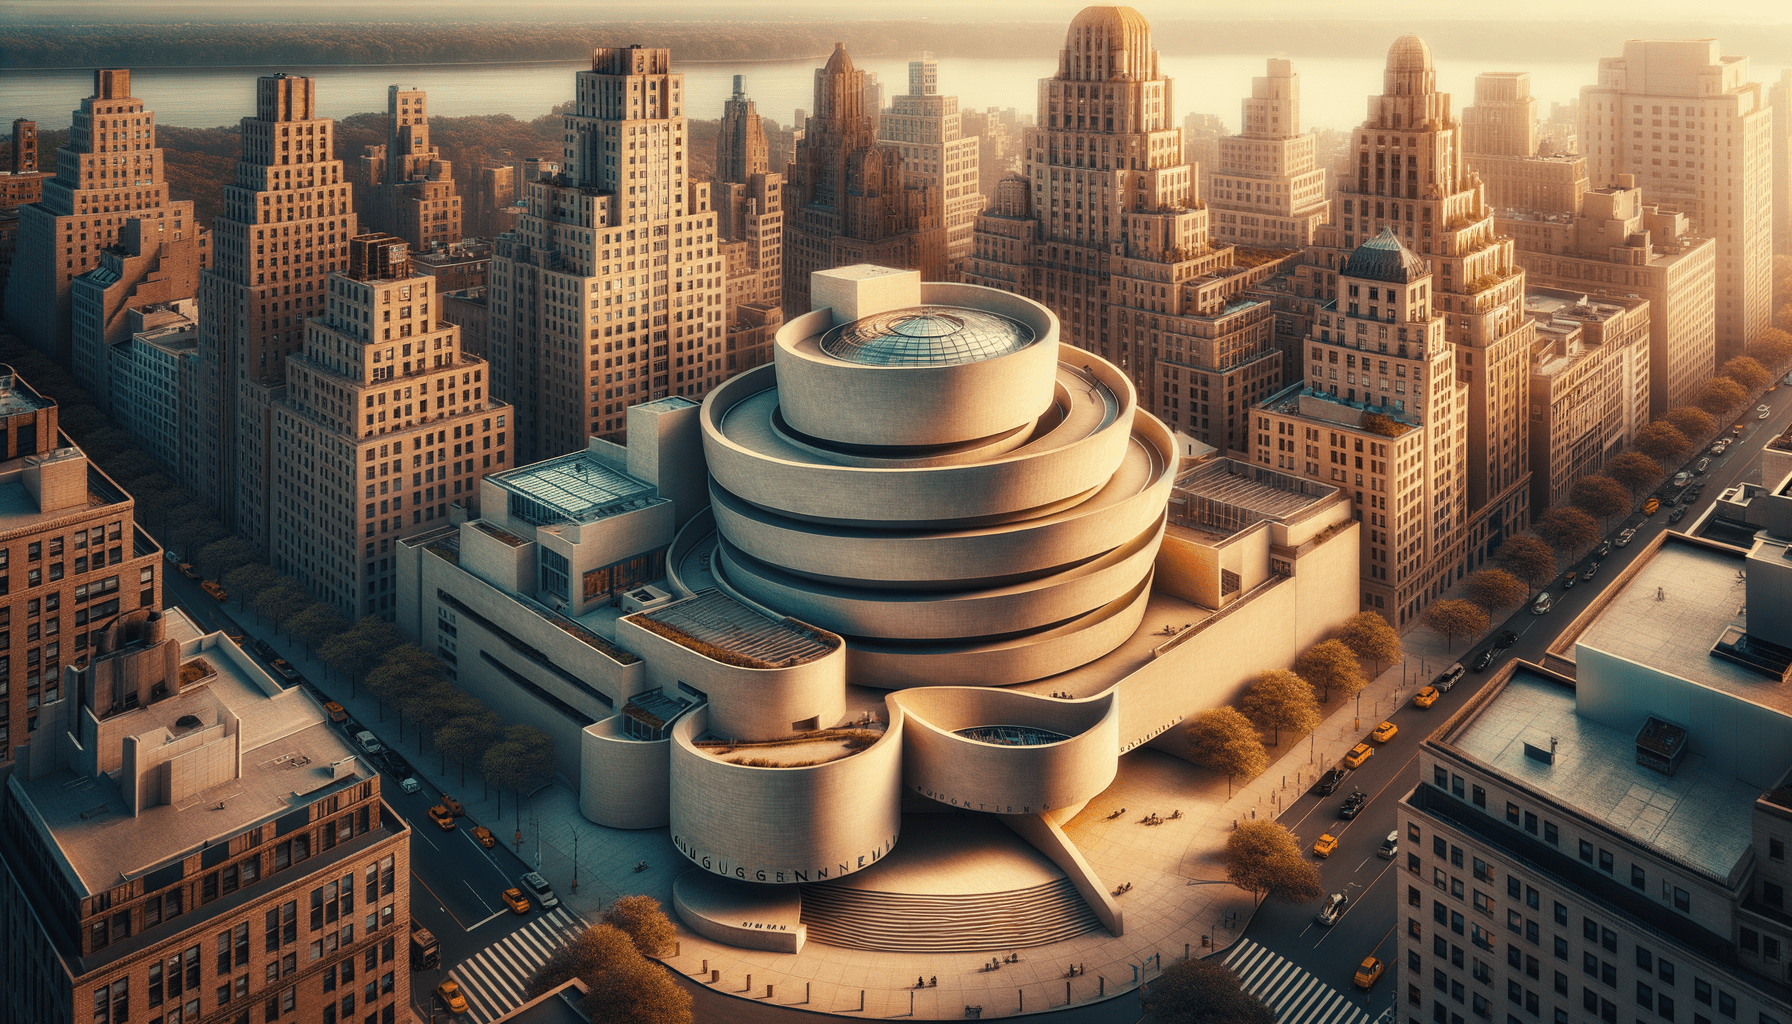 Scopri tutto sul Guggenheim Museum a New York: Storia, Opere, Biglietti, indirizzo e orari